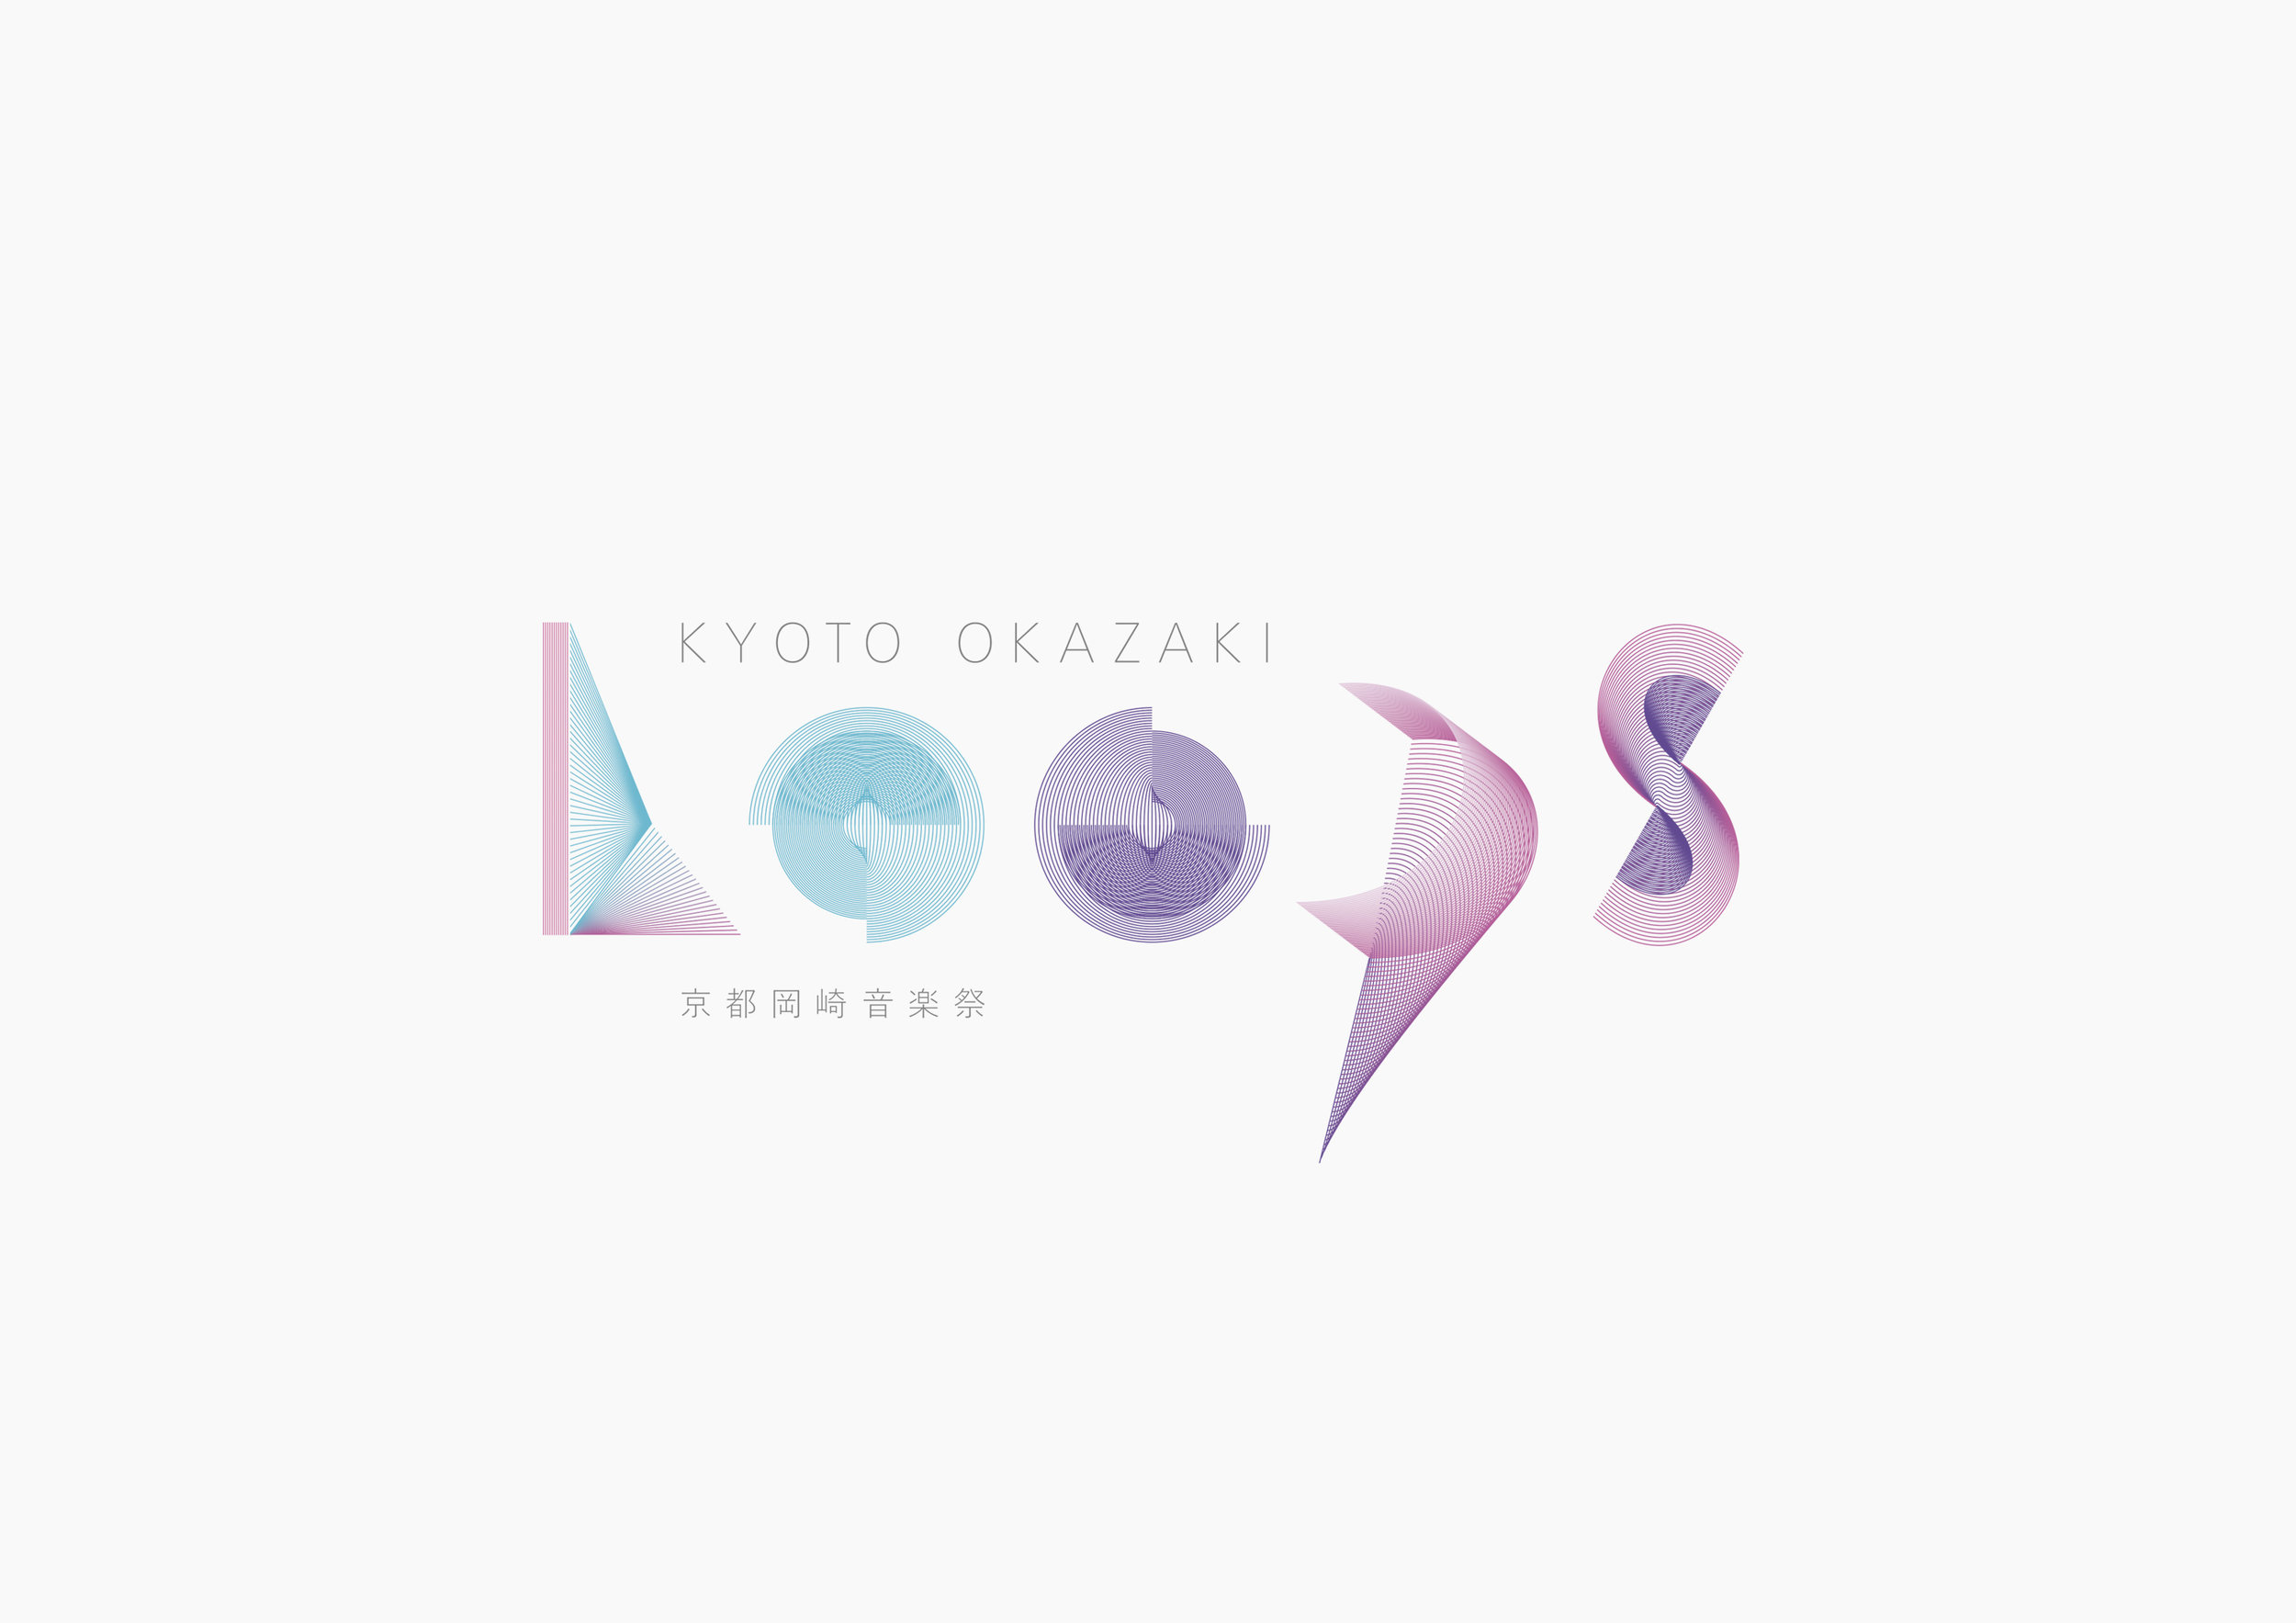 KYOTO OKAZAKI LOOPS